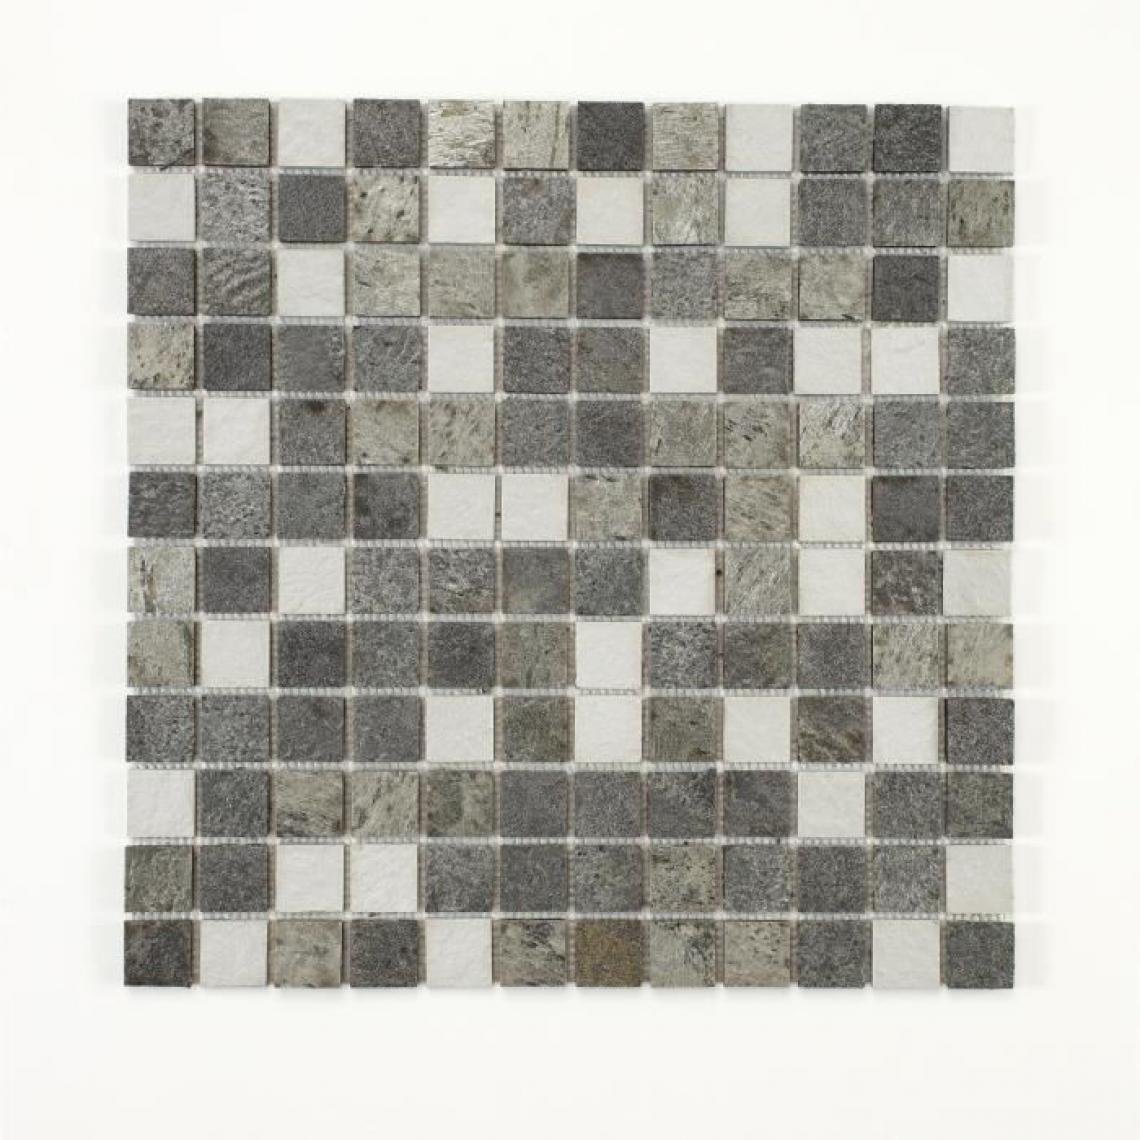 U-Tile - U-TILE Mosaique mixte resine + pierre 30 x 30 cm - carreau 2,5 x 2,5 cm - mixte pierre resine blanc - Receveur de douche